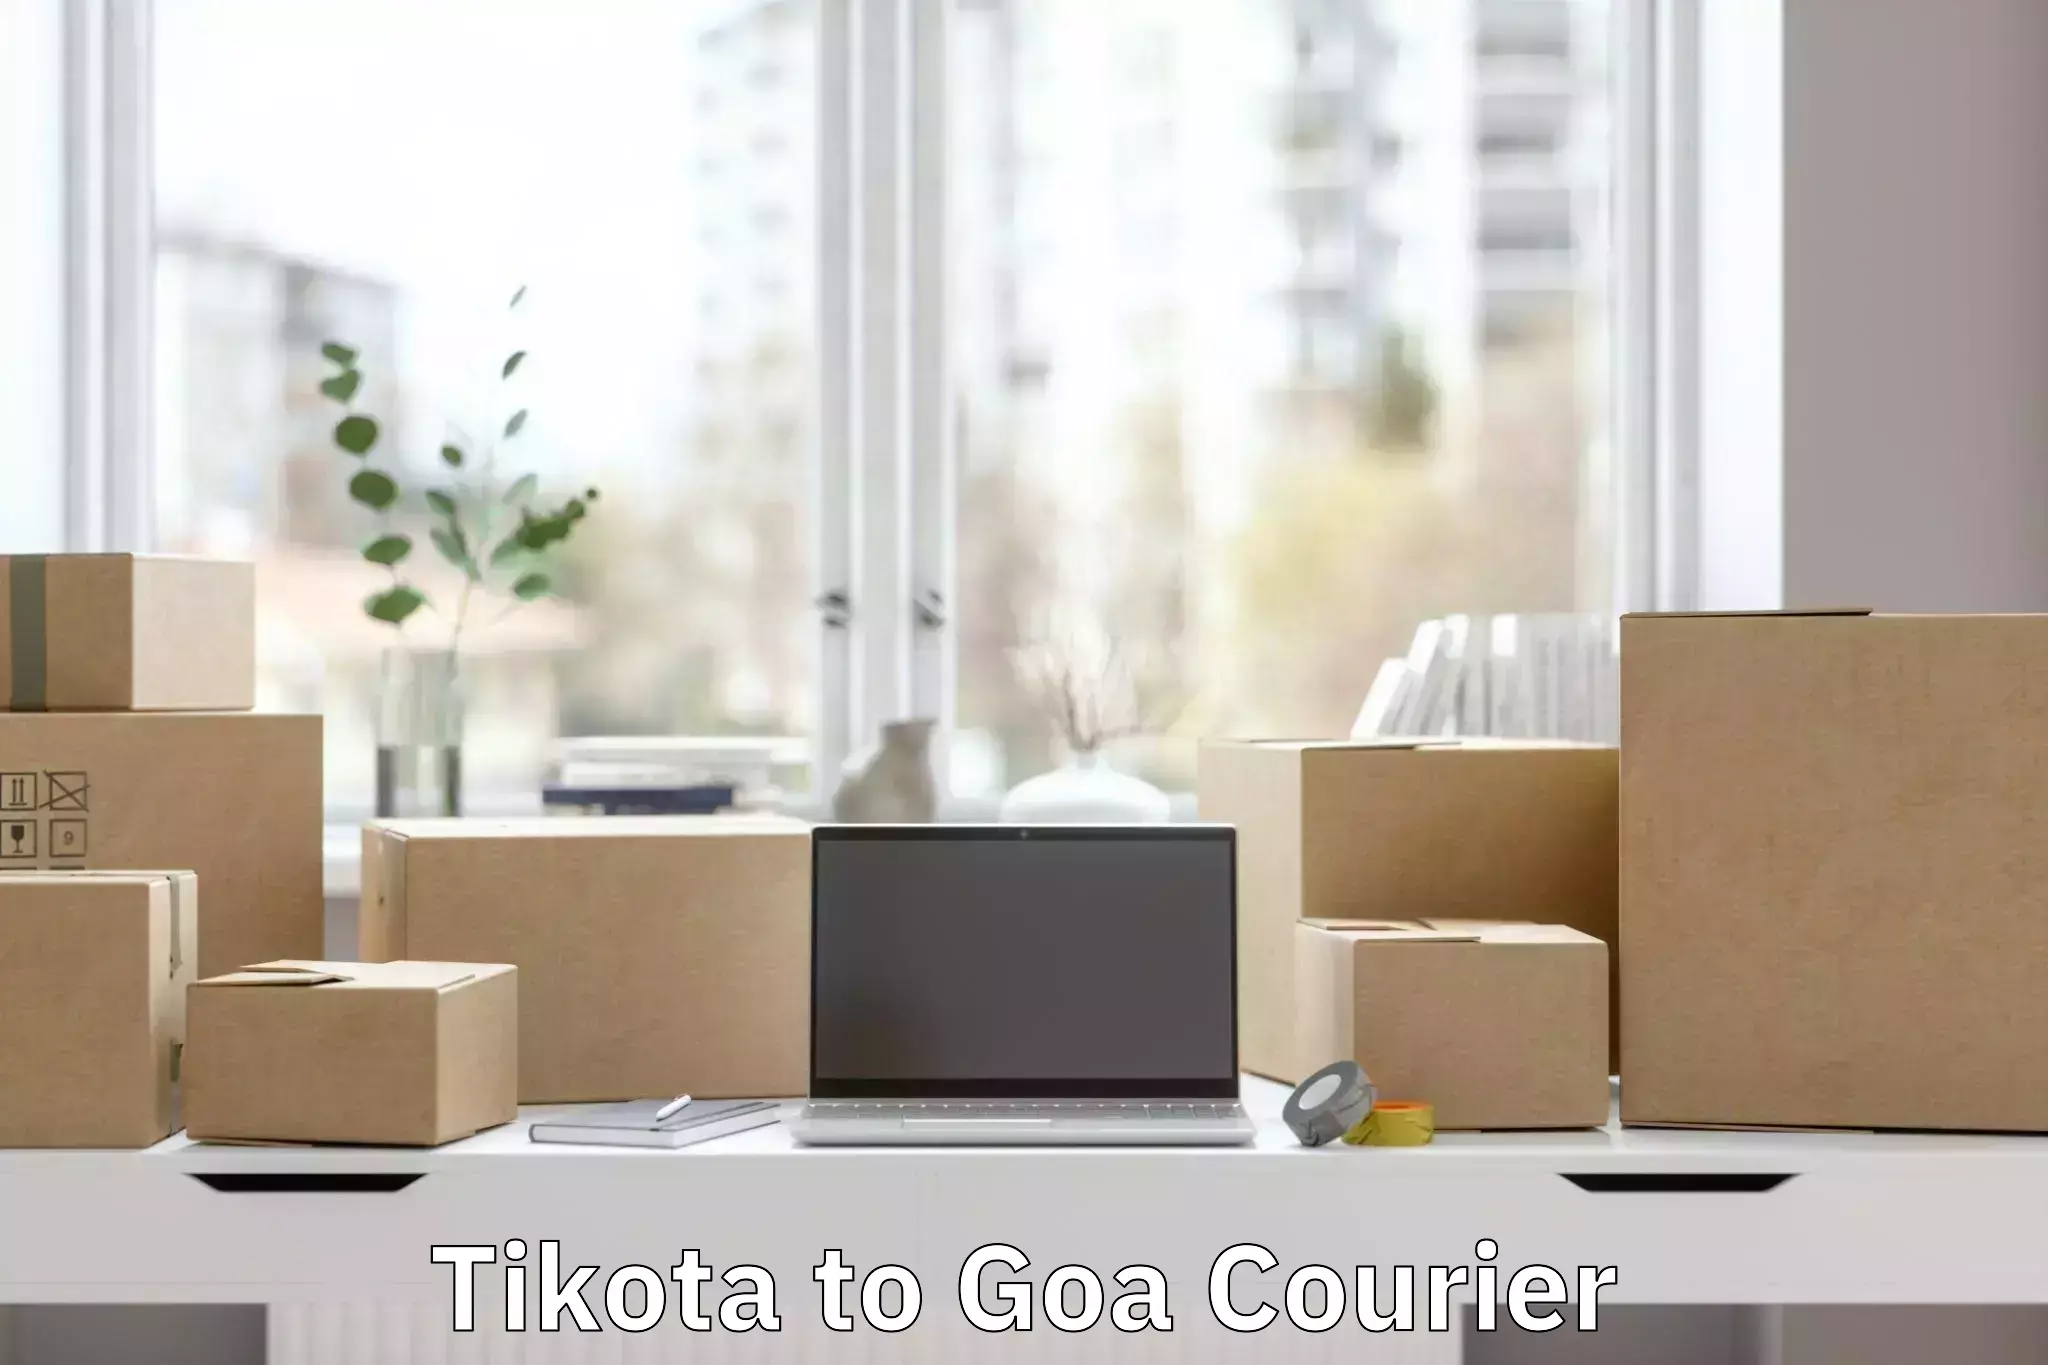 Luggage transport consulting Tikota to Goa